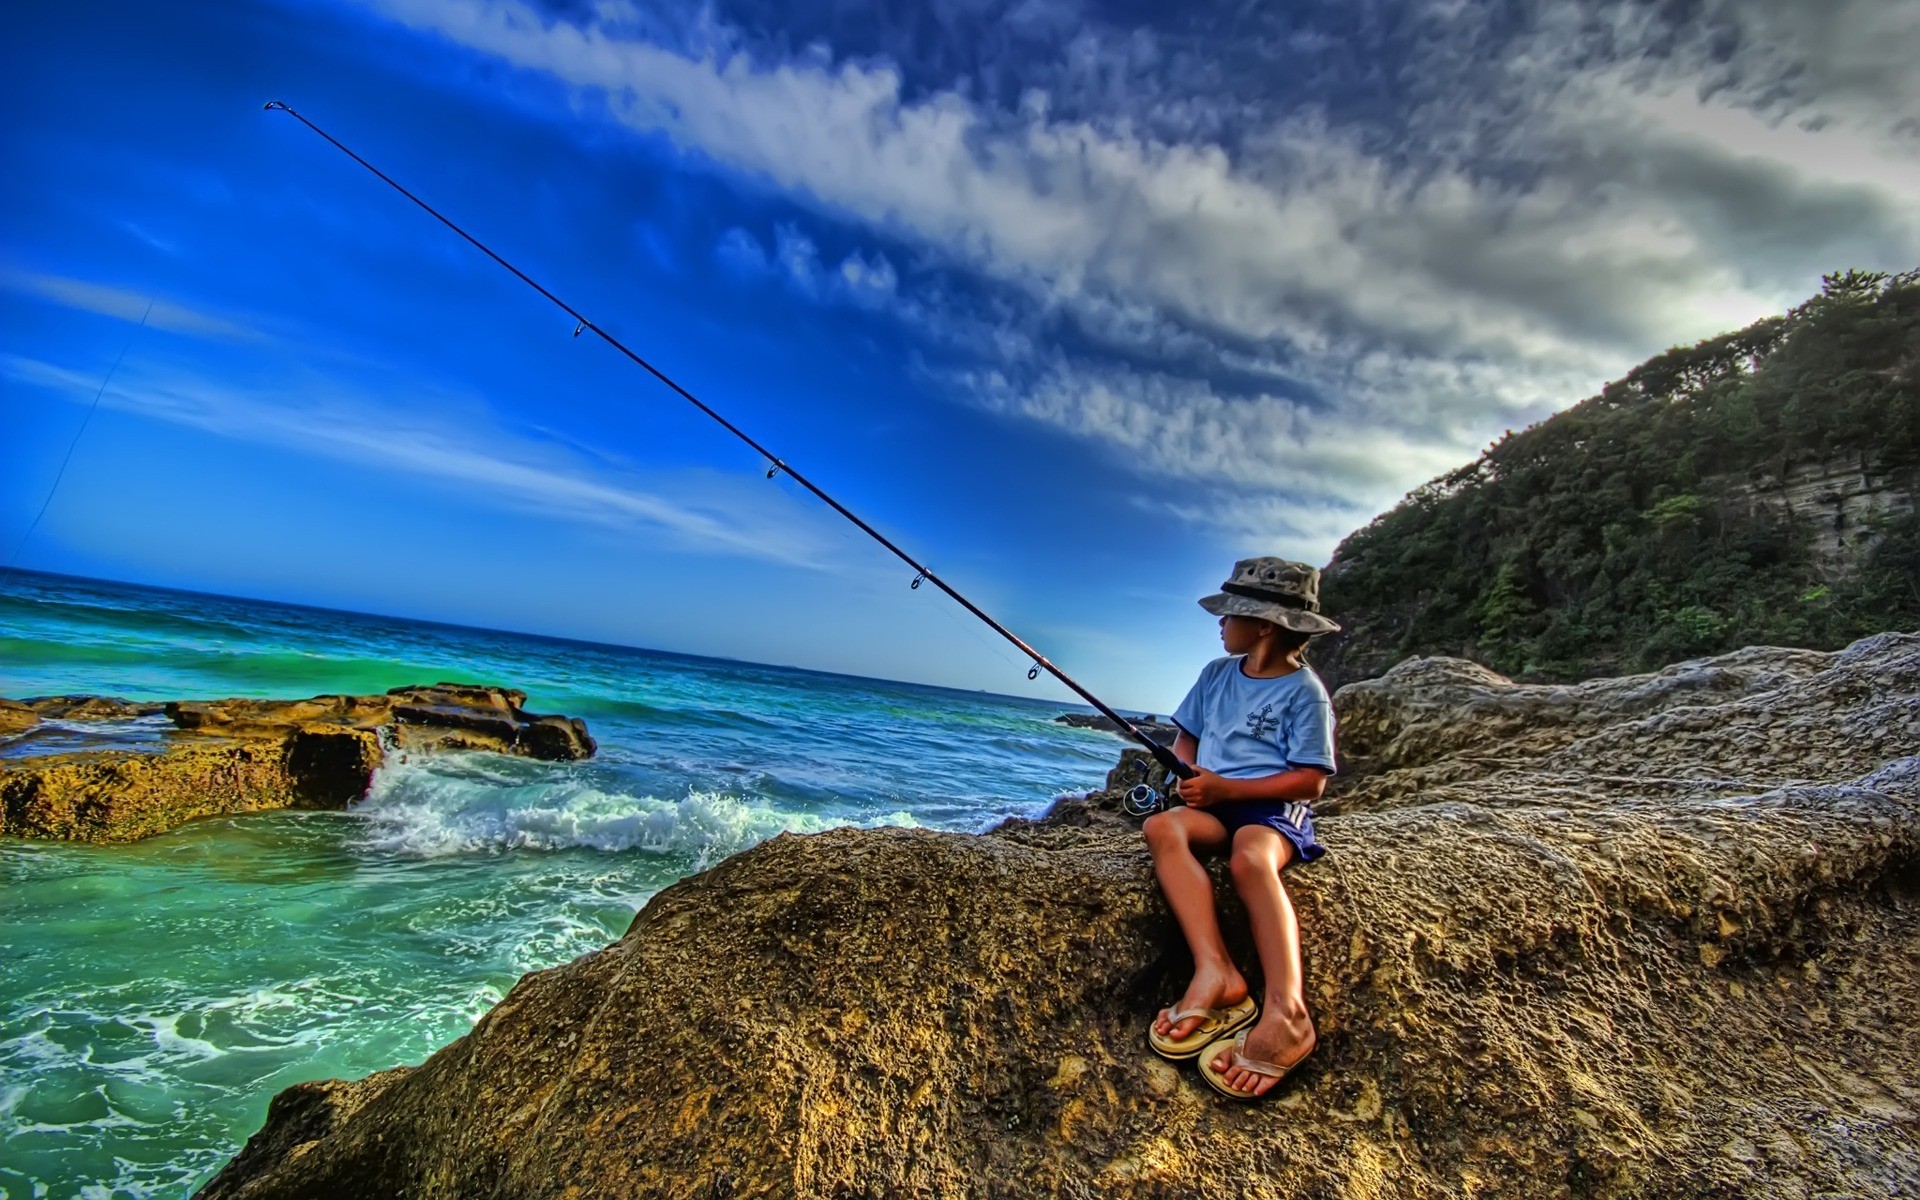 fondos de pantalla de pesca,pesca en roca,caña de pescar,recreación al aire libre,pesca con caña,pescar